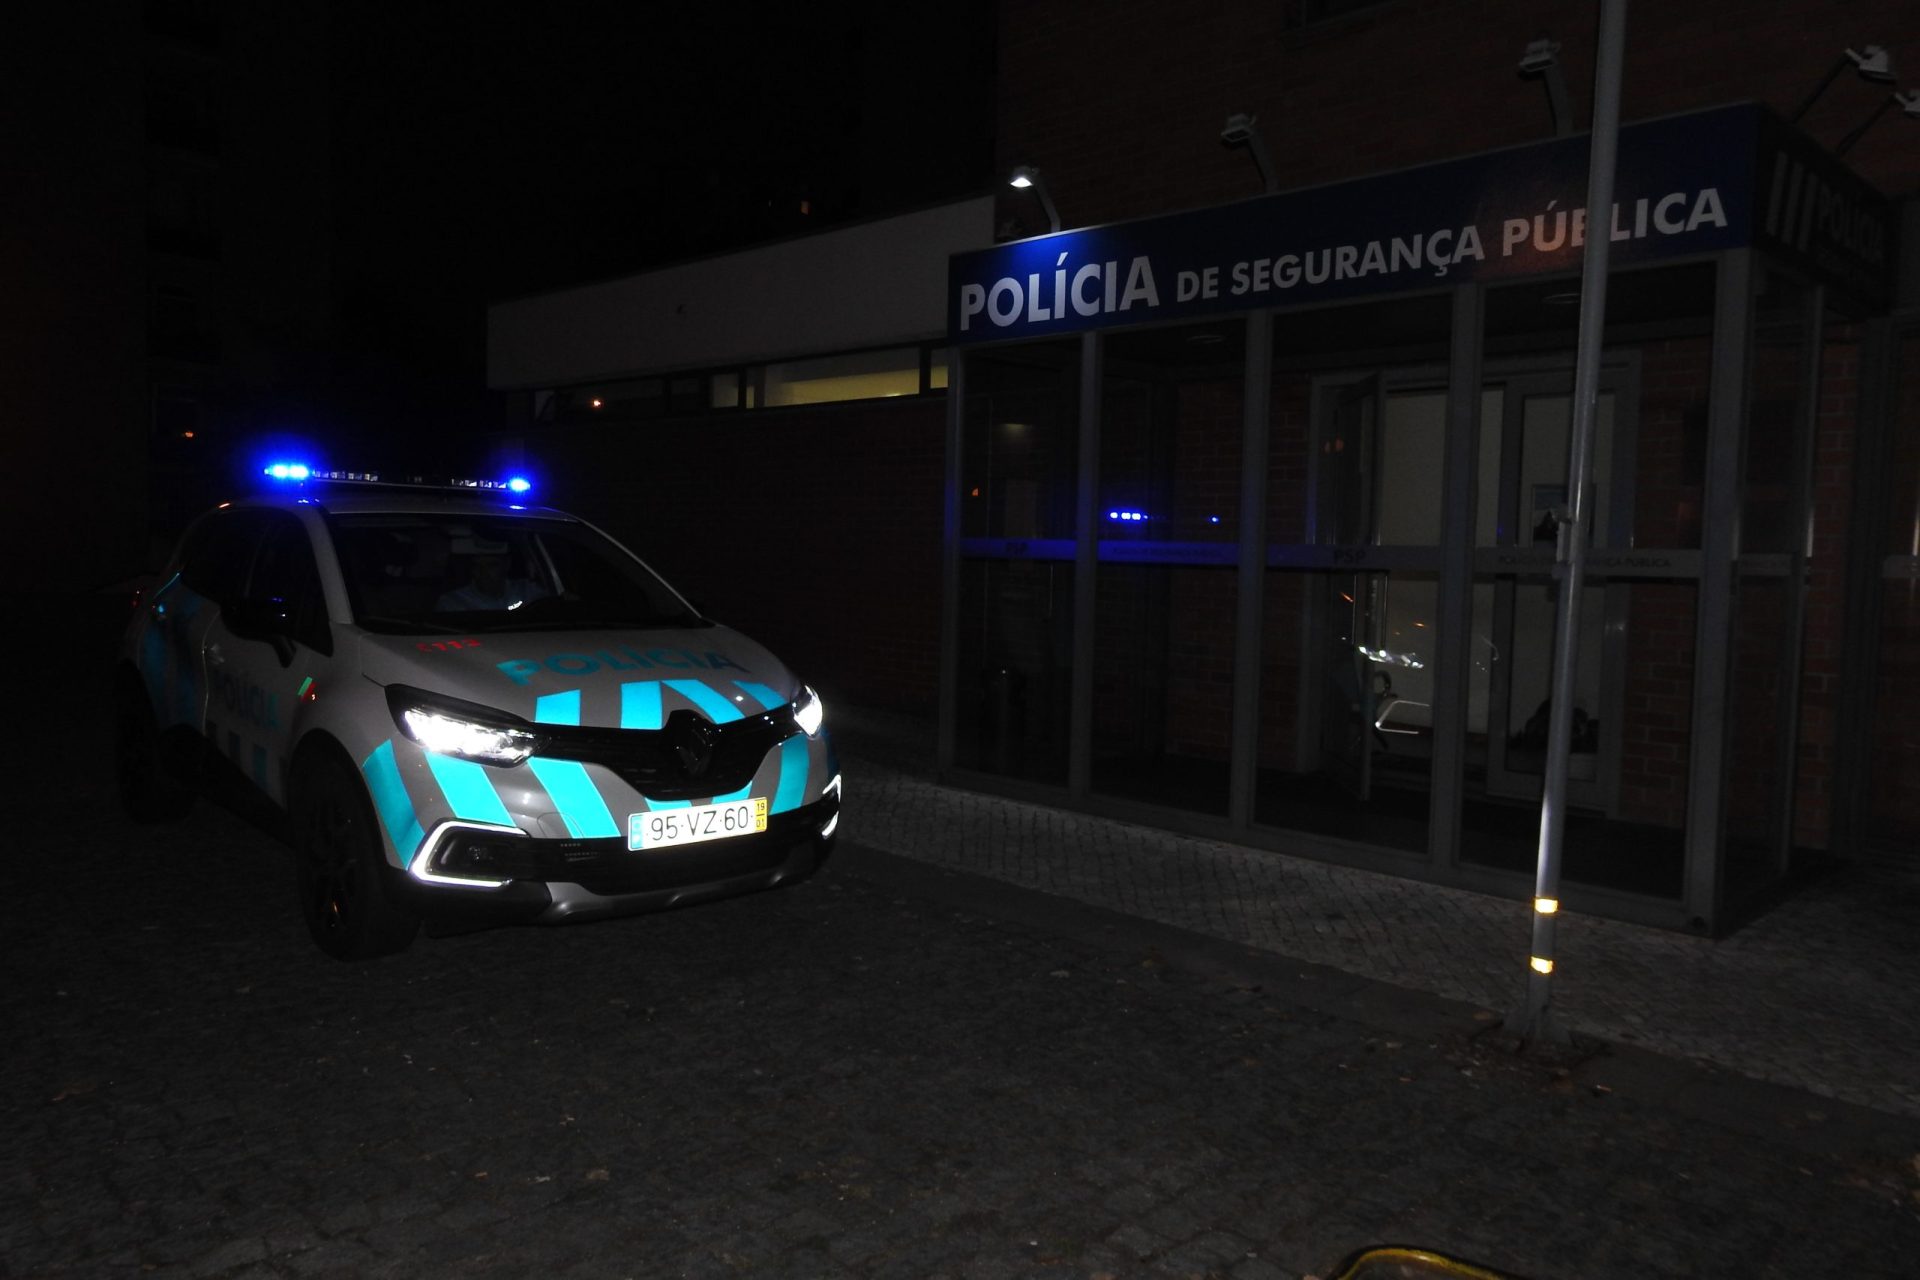 PSP de Braga acaba com vaga de assaltos a motoristas e estafetas